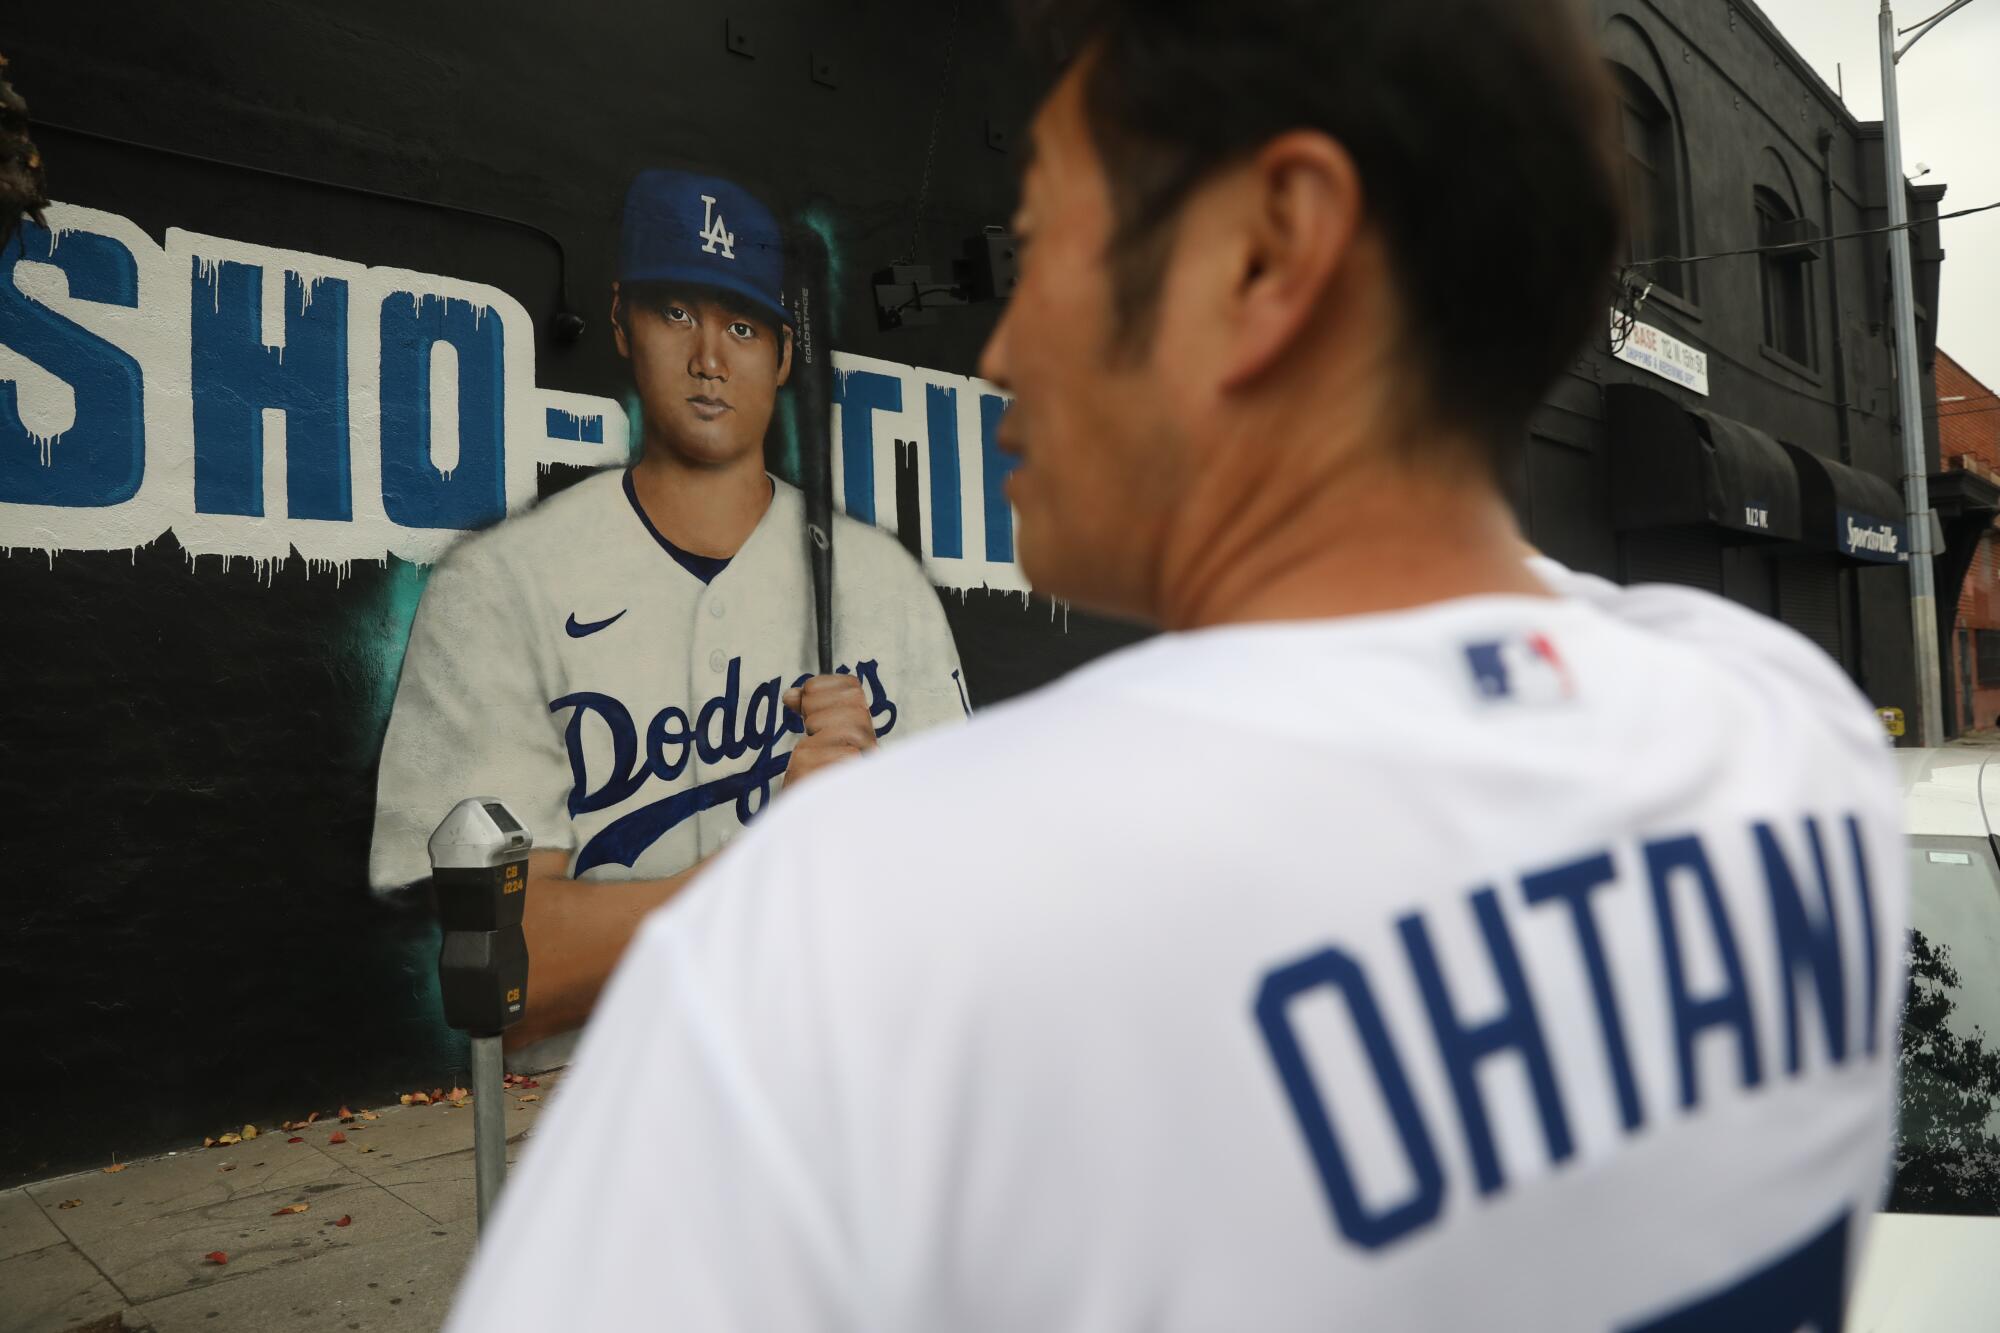 Le fan Kazuo Imai porte un maillot des Shohei Ohtani Dodgers lorsqu'il regarde la fresque d'Ohtani au centre-ville de Los Angeles.